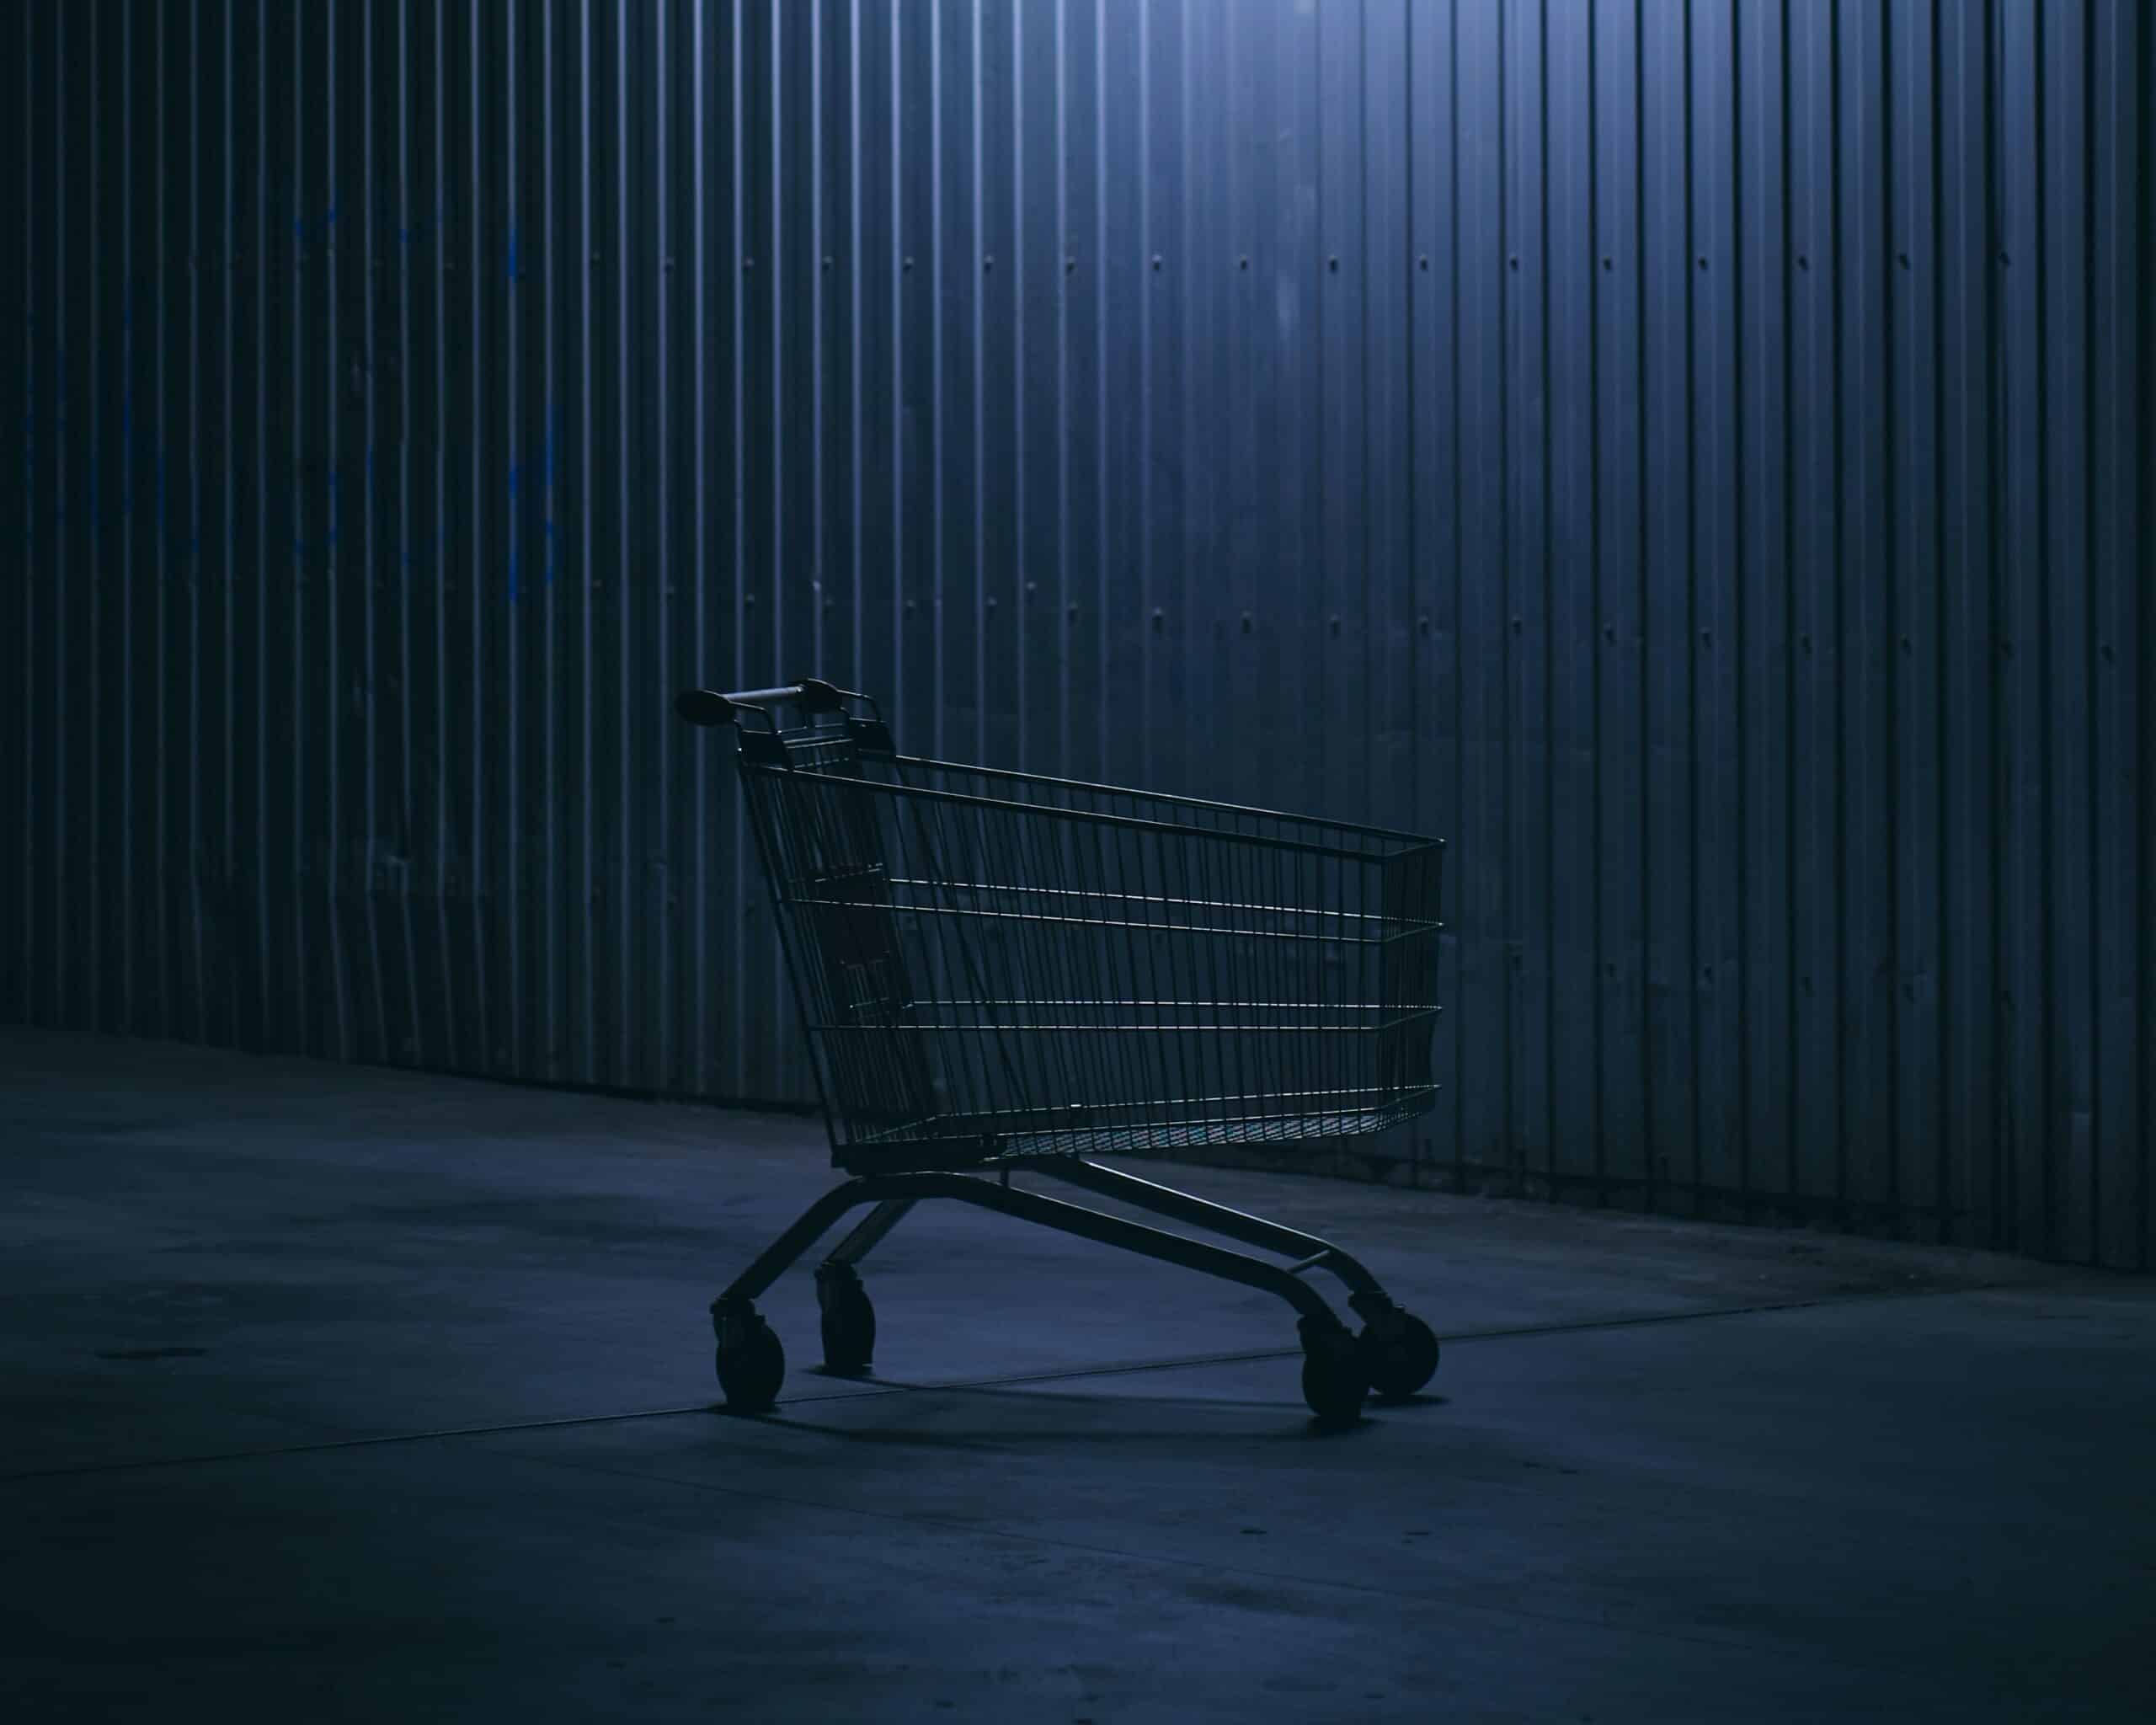 Empty shopping trolley